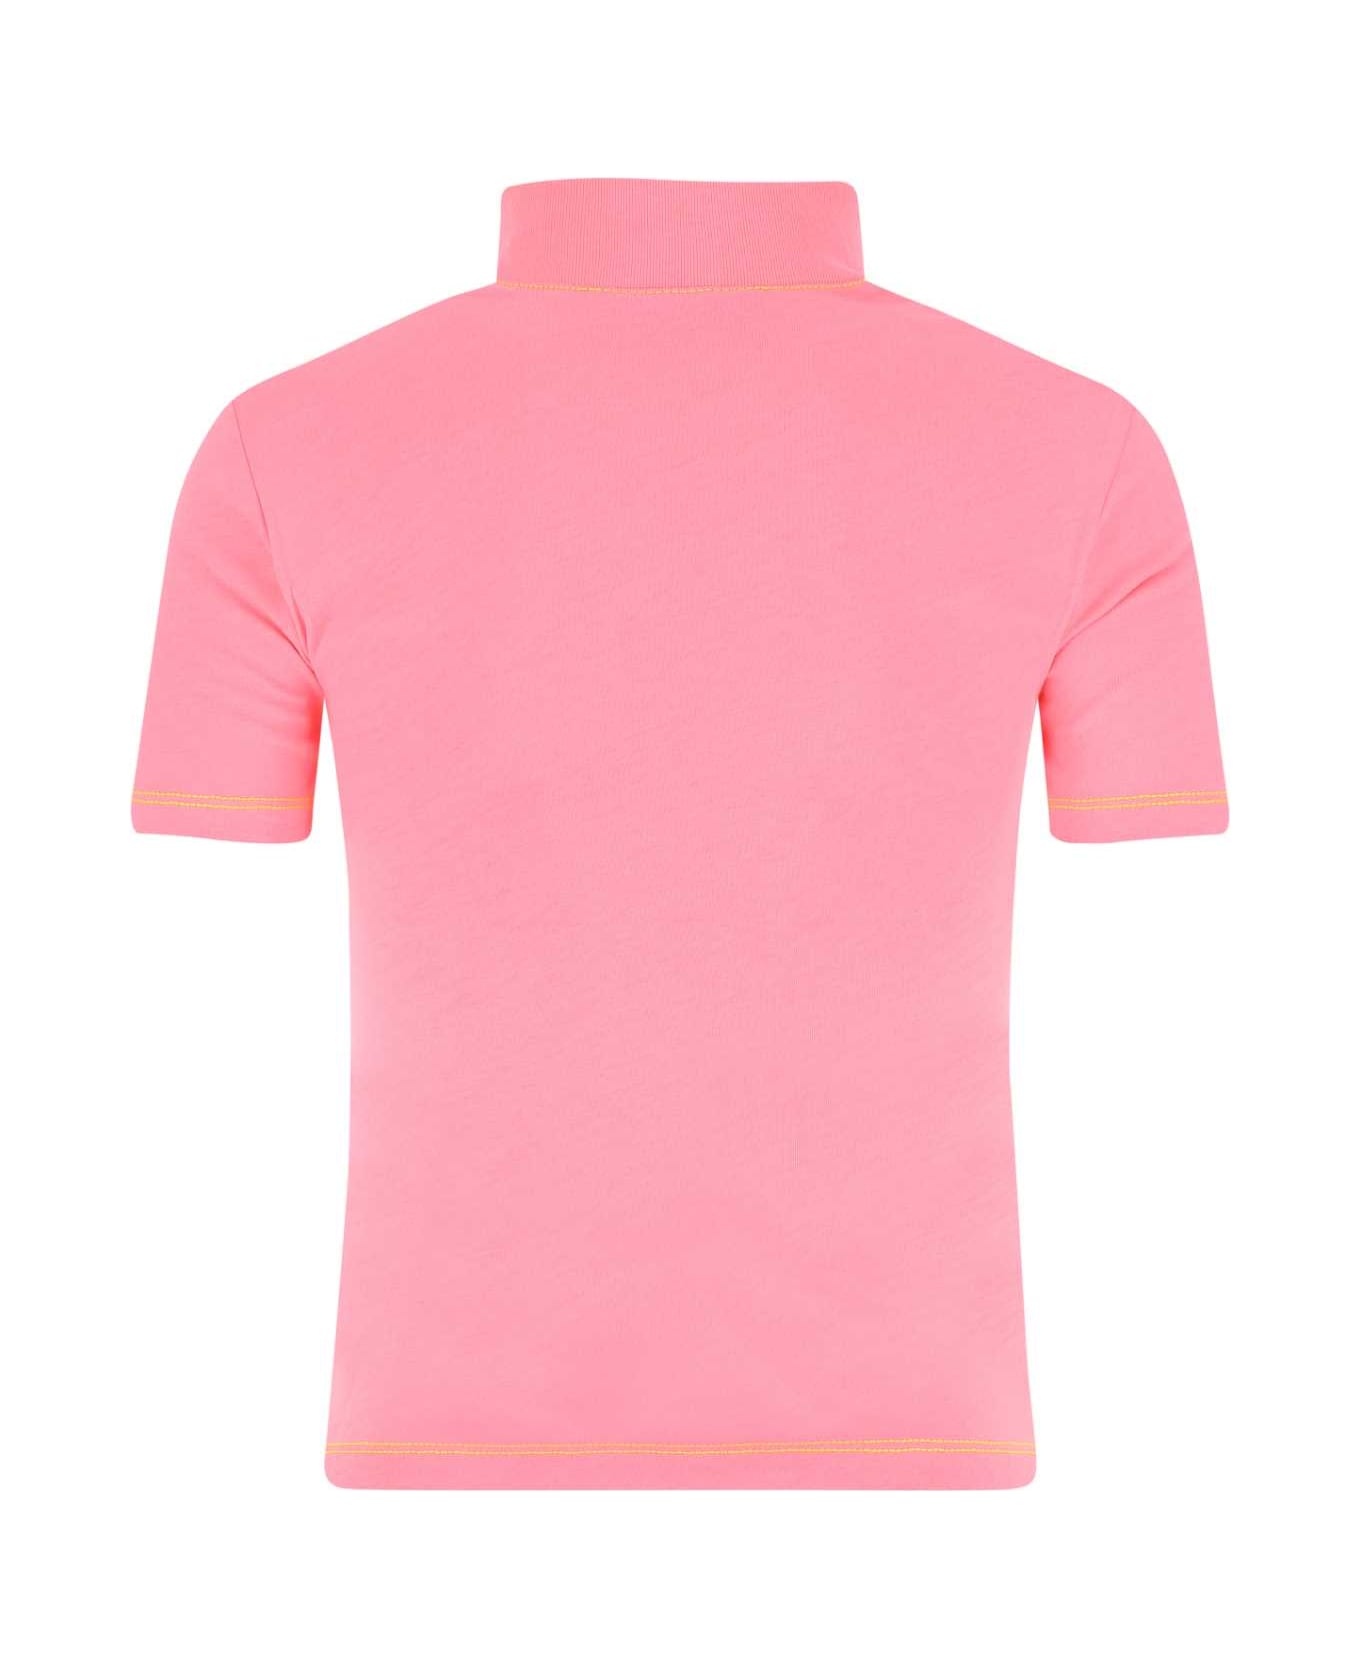 Chiara Ferragni Pink Cotton T-shirt - 414